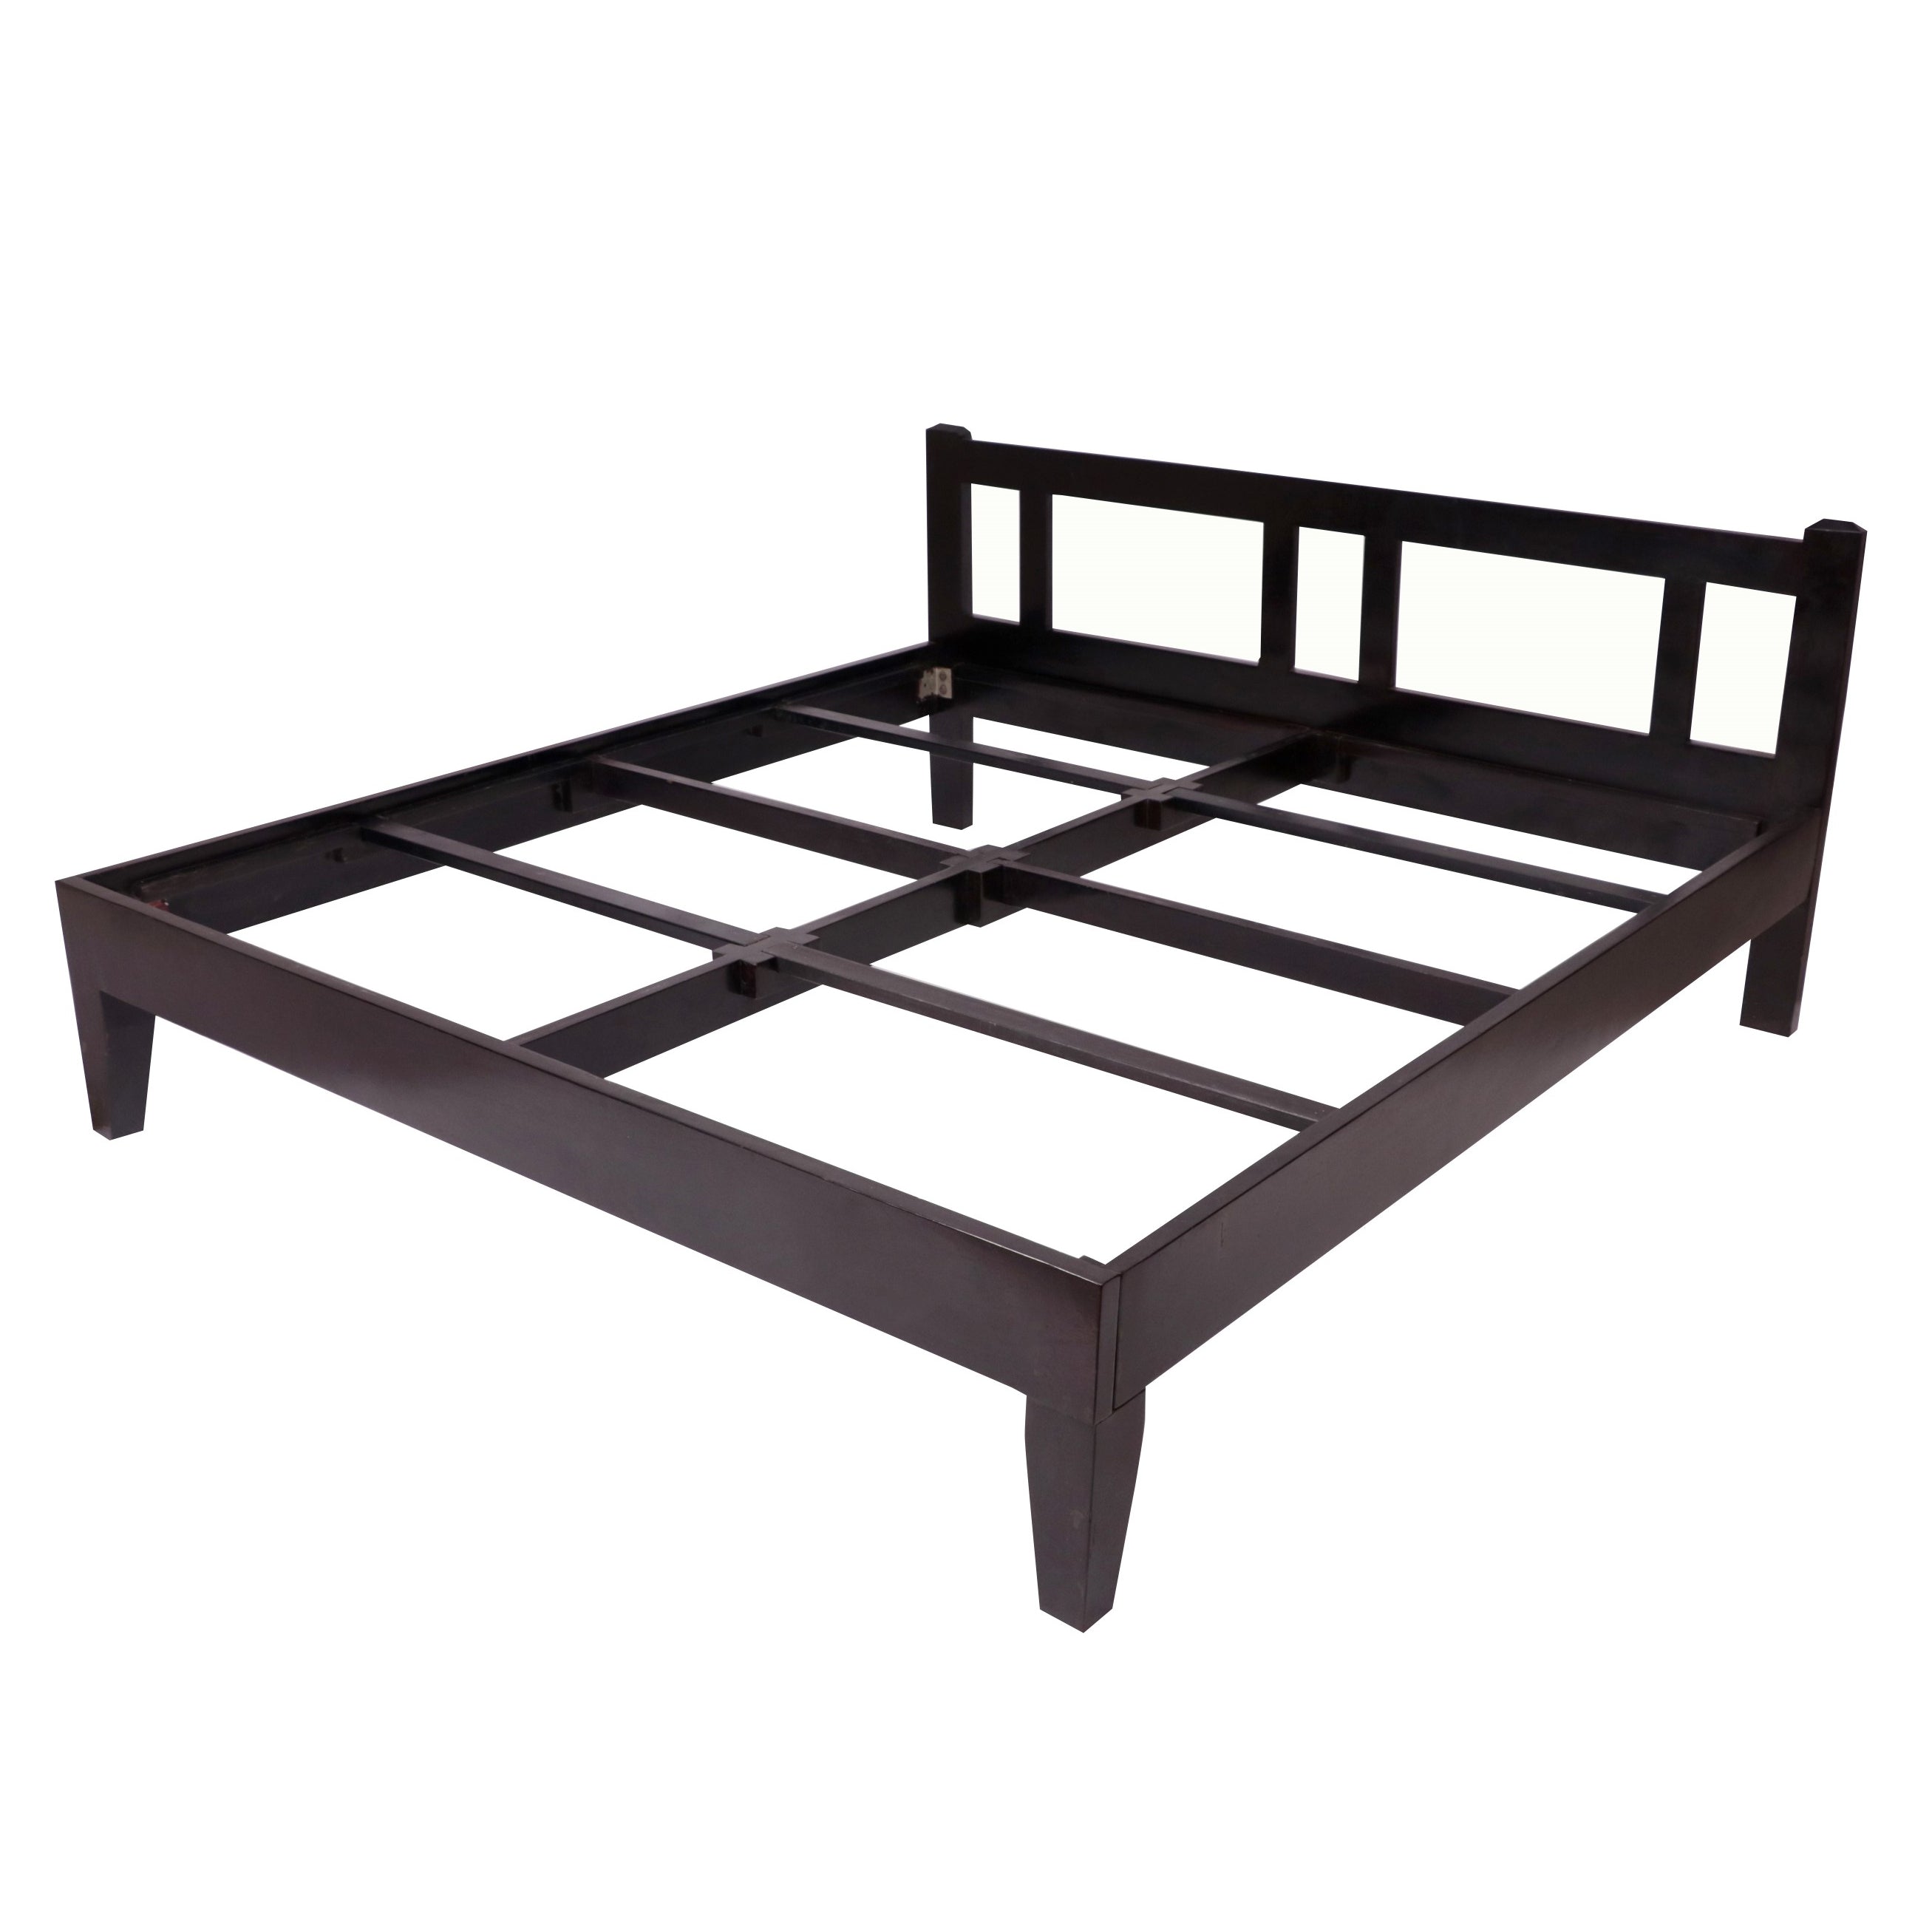 Teak wood Simplistic Bed Bed